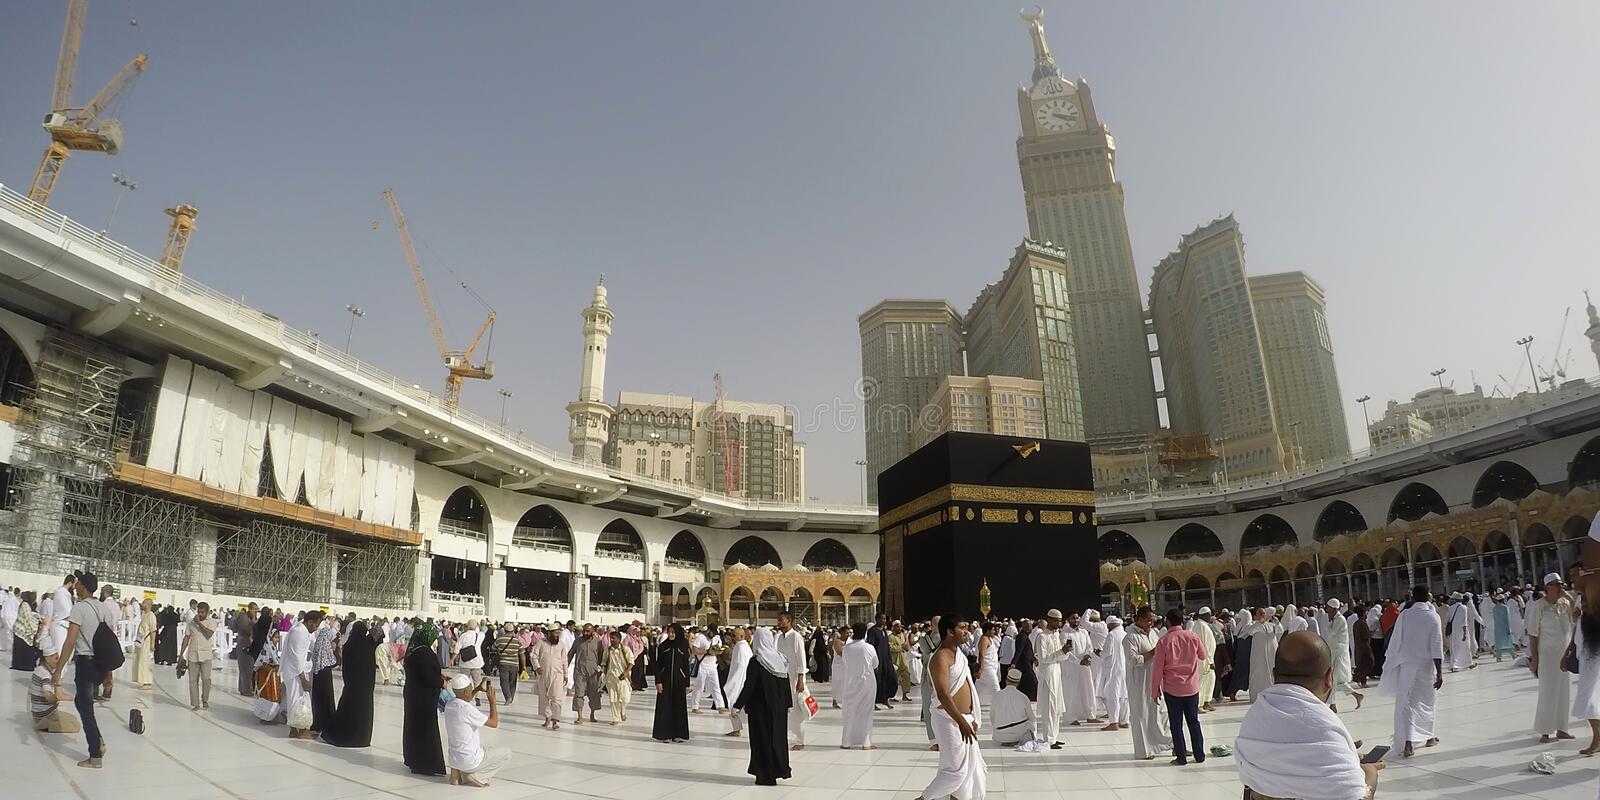 Ampun! Tembus Rekor Suhu Makkah Nyaris 50 Derajat Celsius, Jemaah Bisa Nyaman Tetap Ibadah, Kok Bisa?